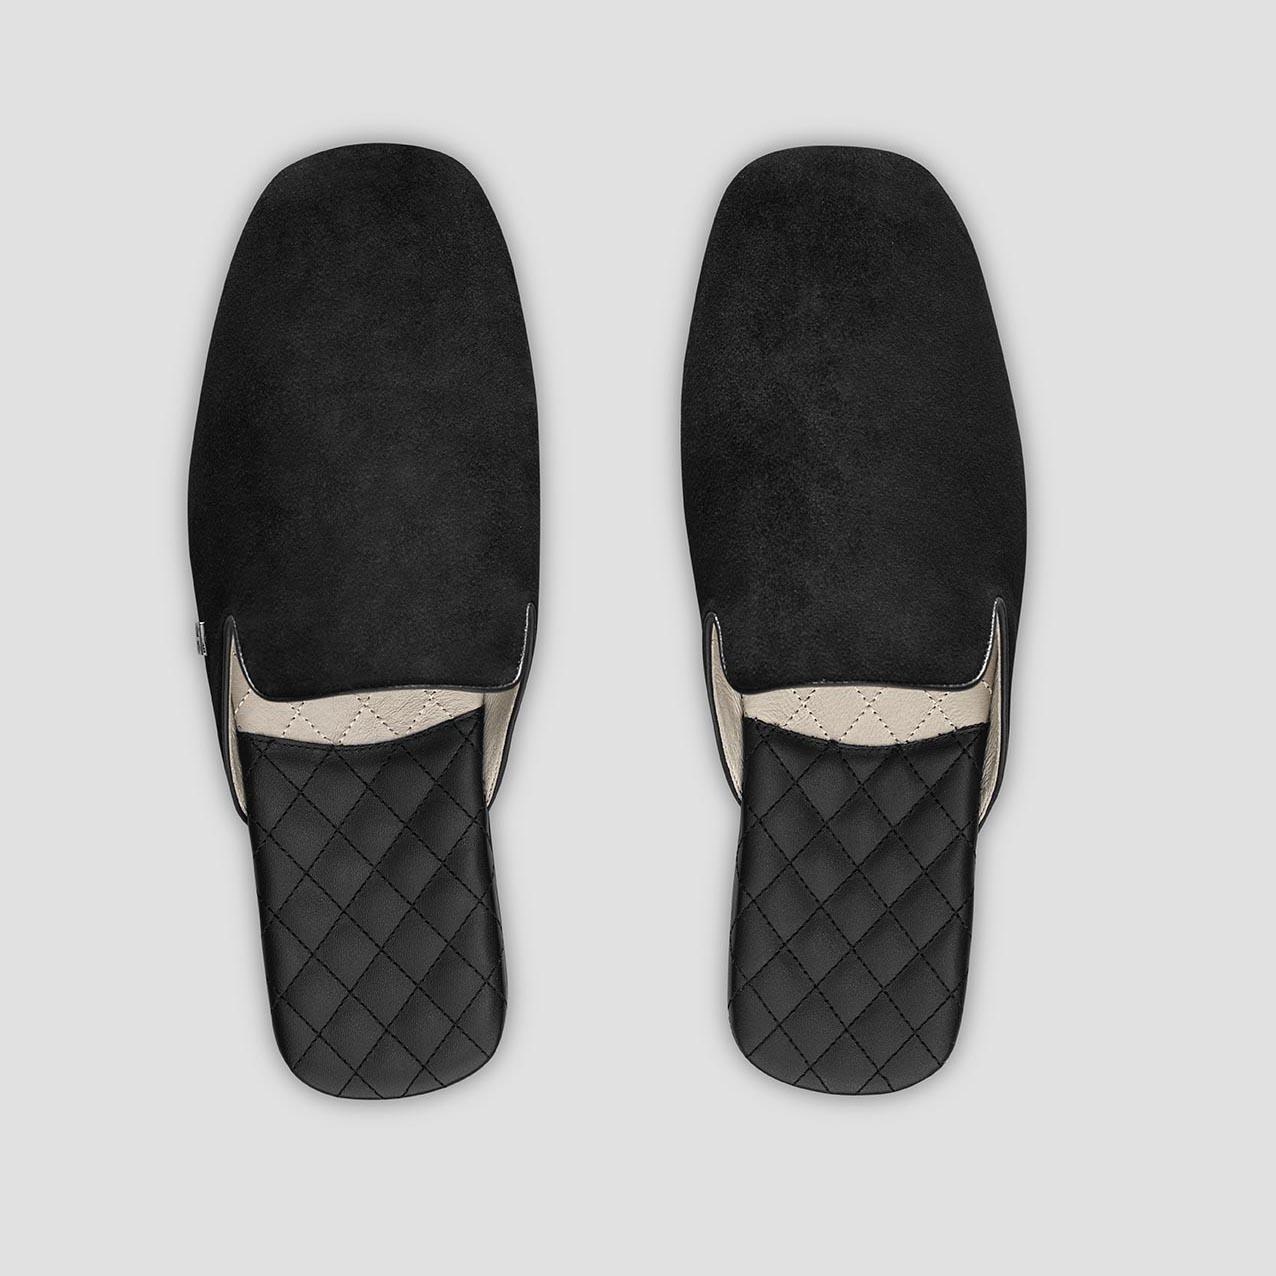 фото Тапочки togas реон черные мужские кожаные, размер 42-43